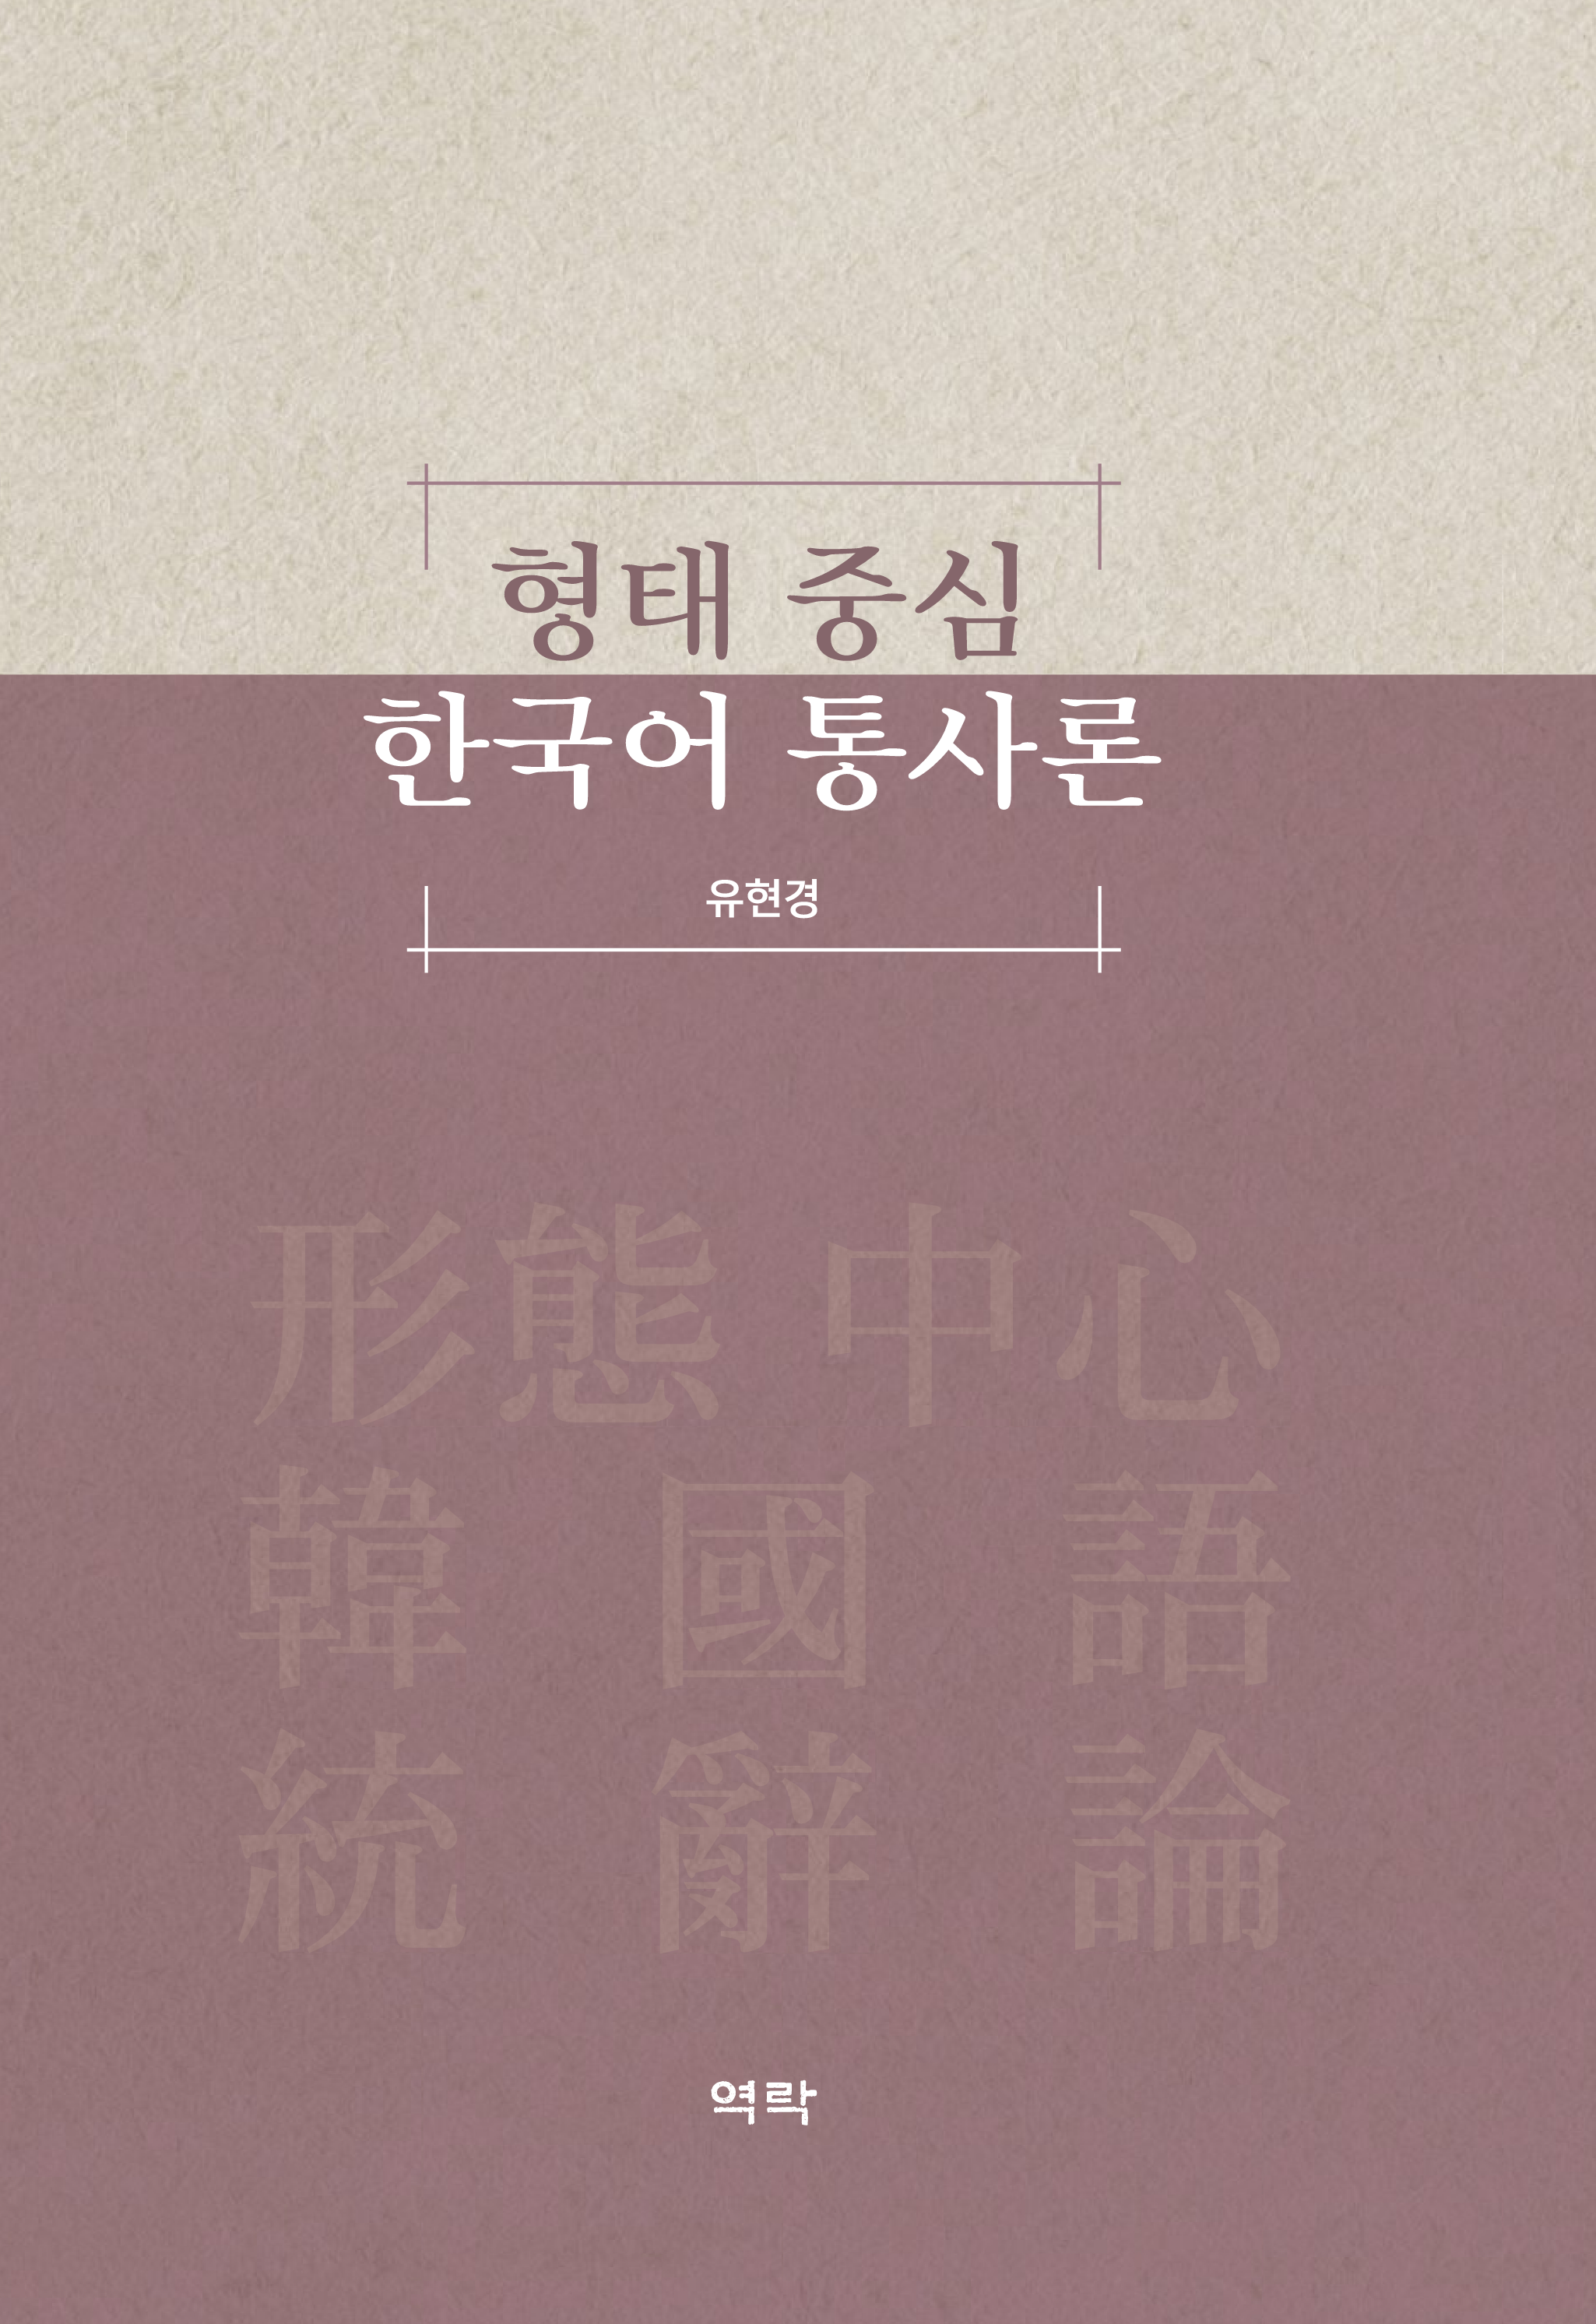 형태 중심 한국어 통사론